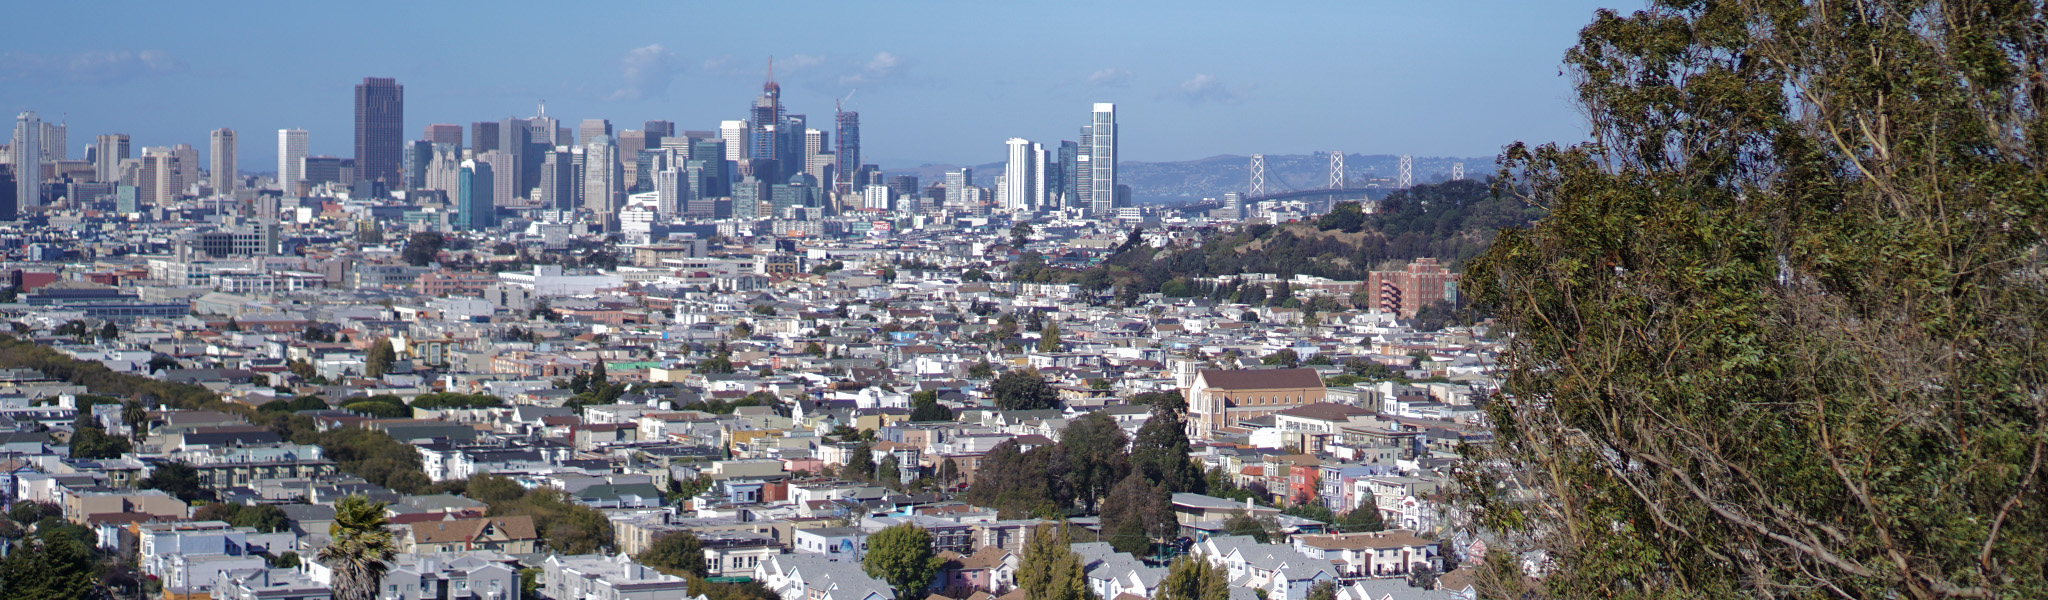 Oakland & San Francisco Green City Guide